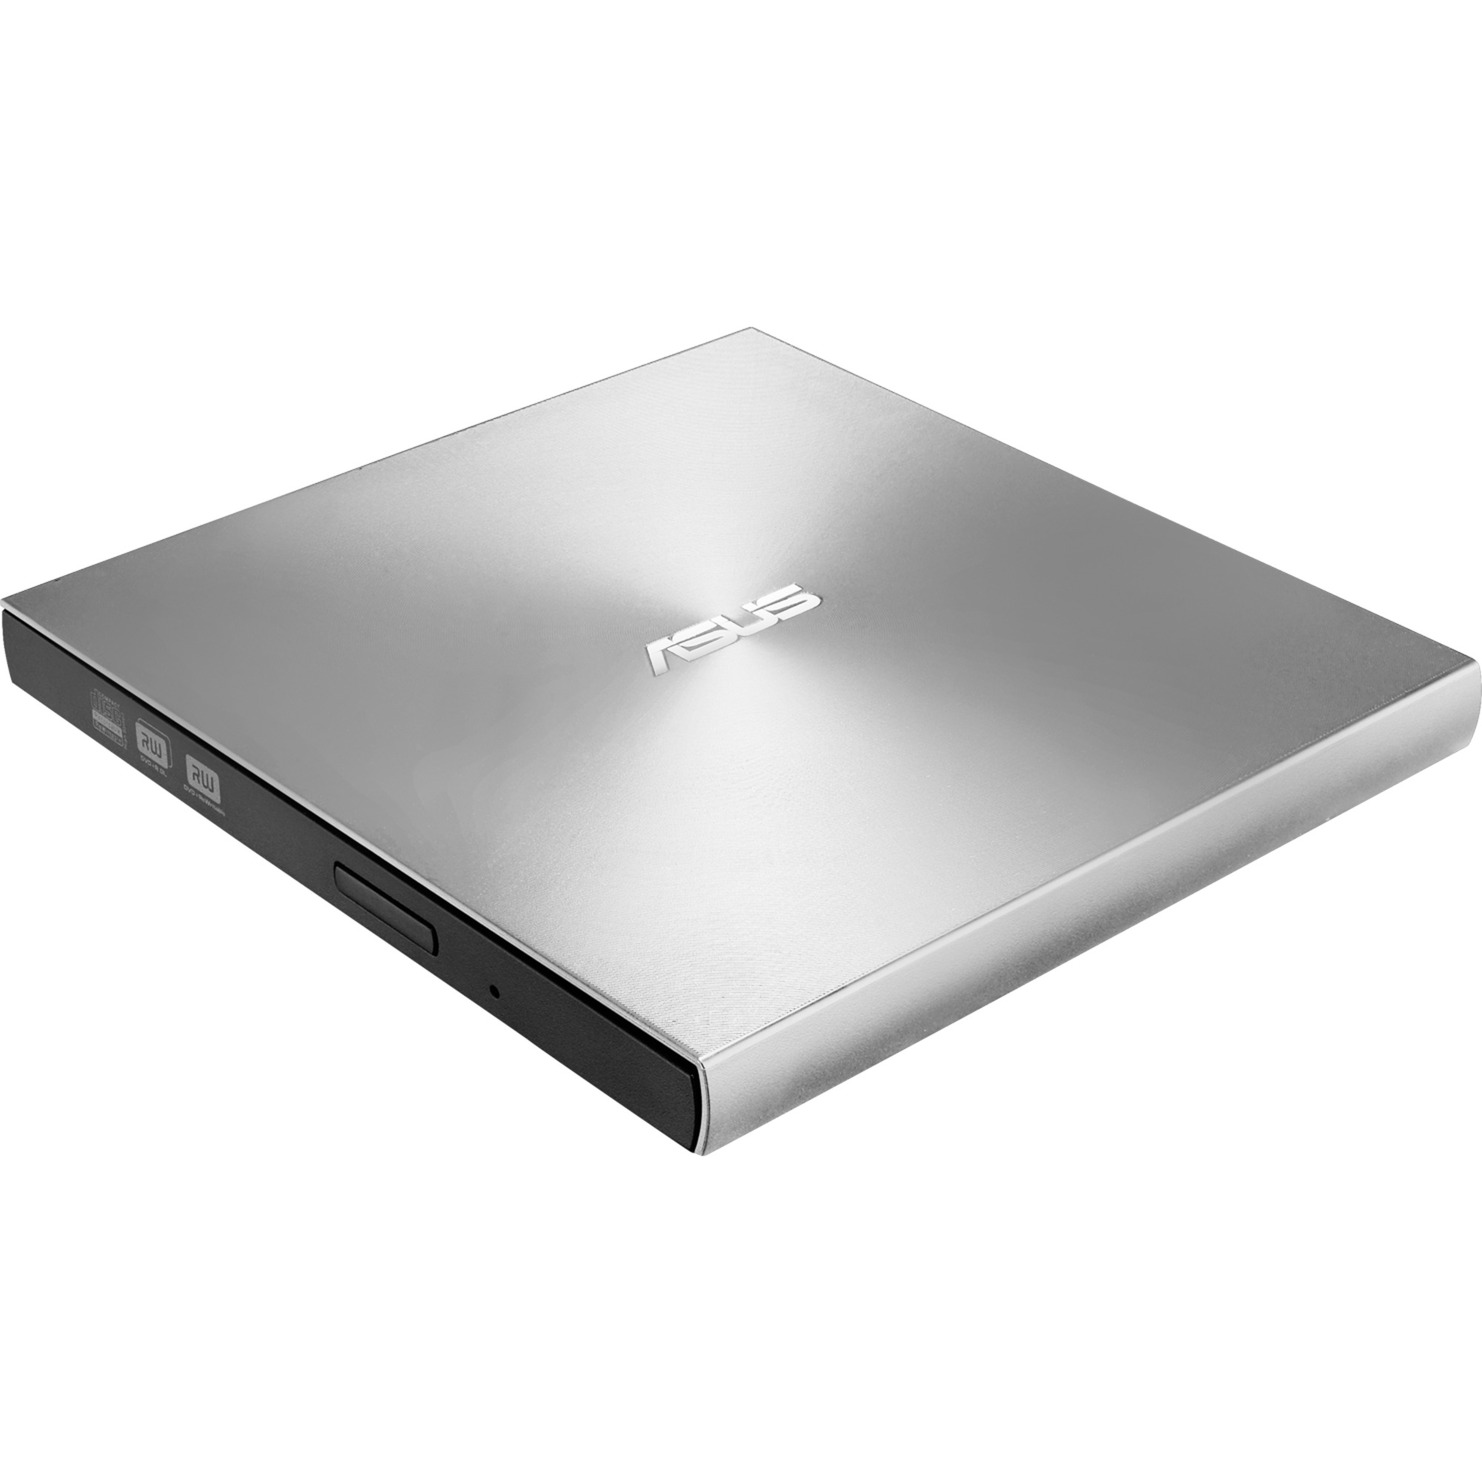 ZenDrive U9M, externer DVD-Brenner von Asus